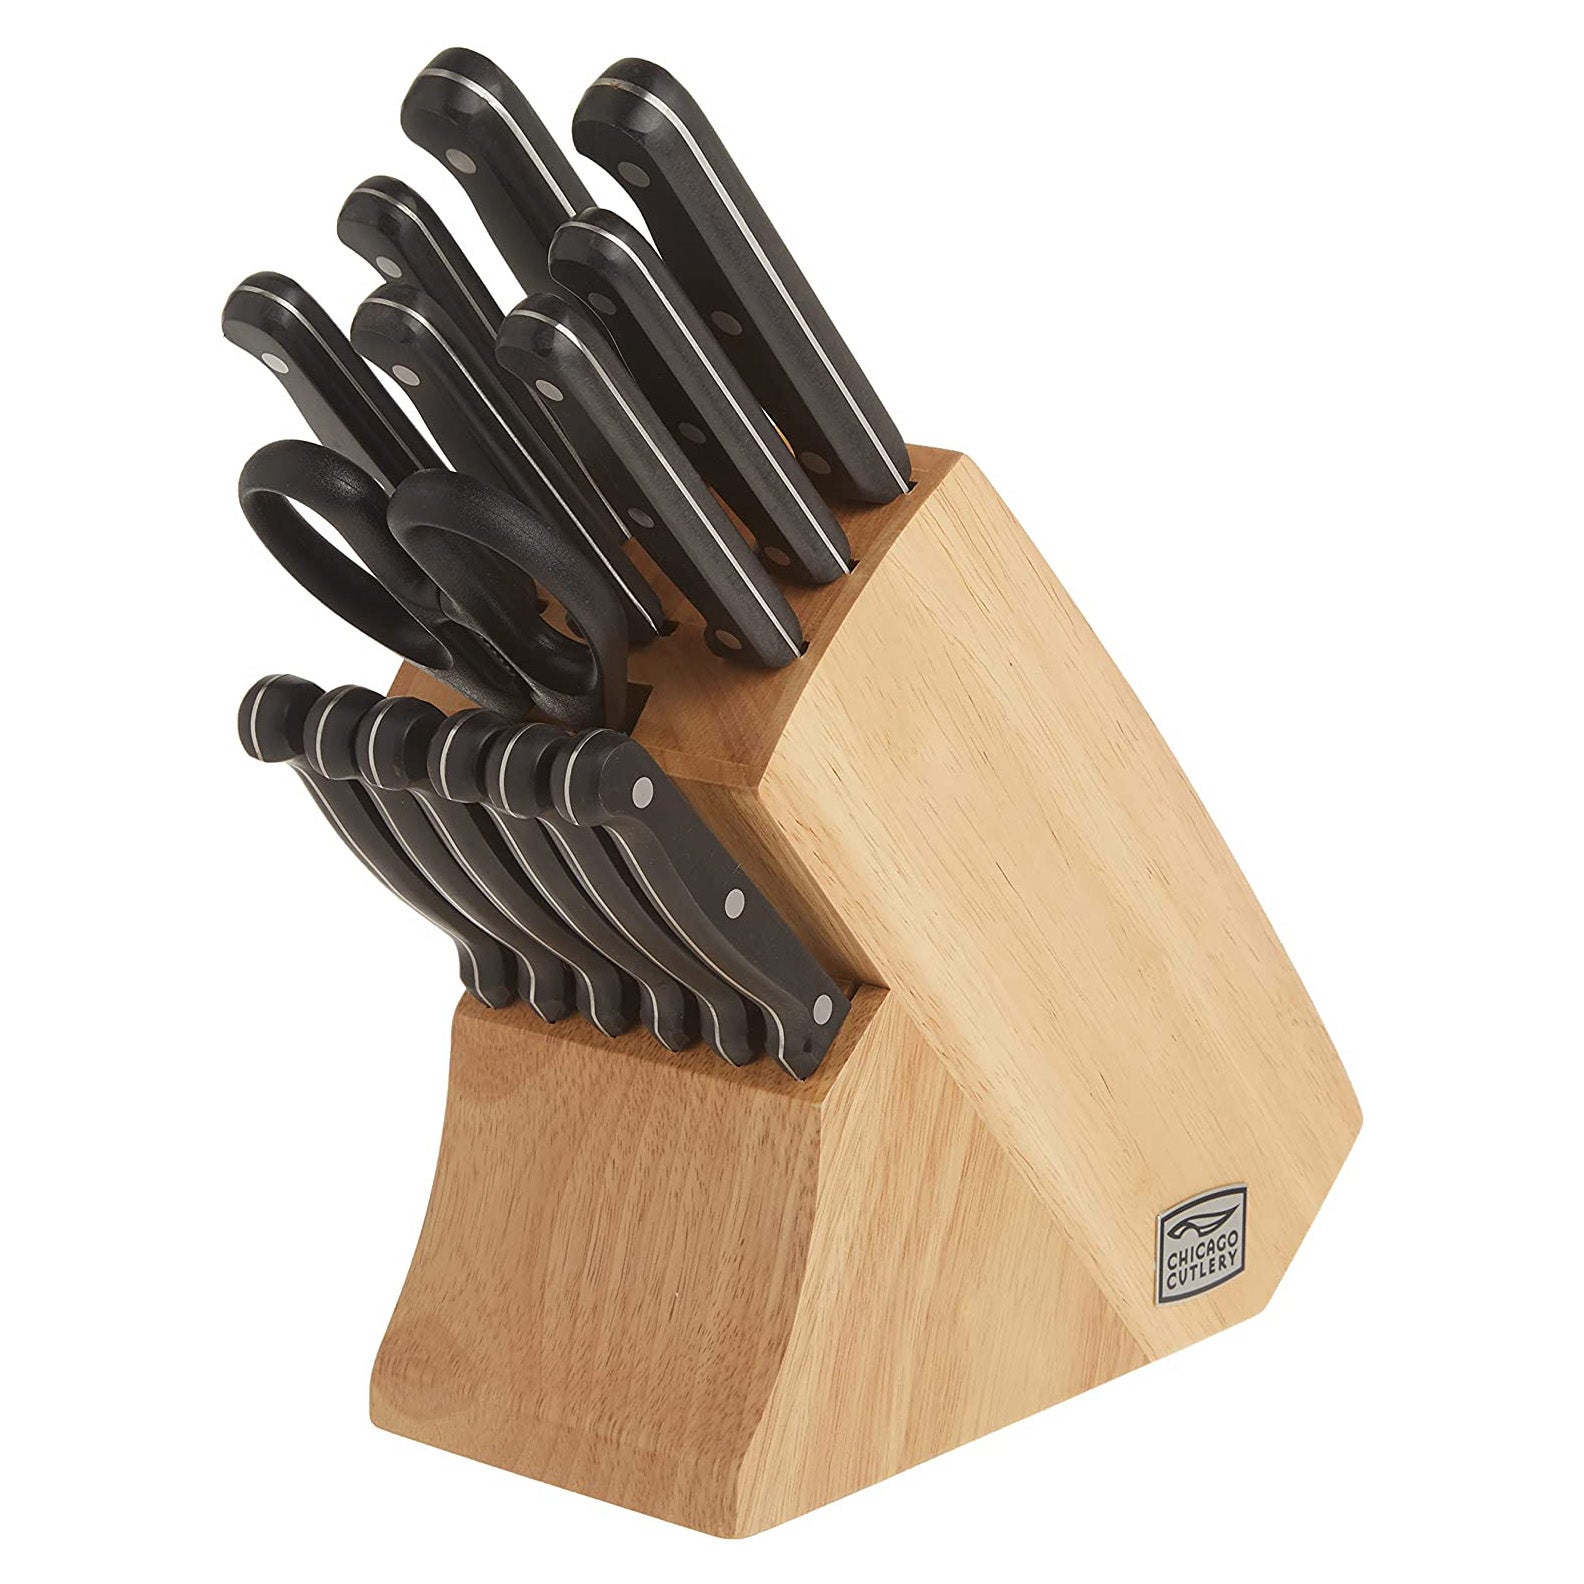 Chicago Cutlery Essentials 15-Piece Stainless Steel Kitchen Knife Set